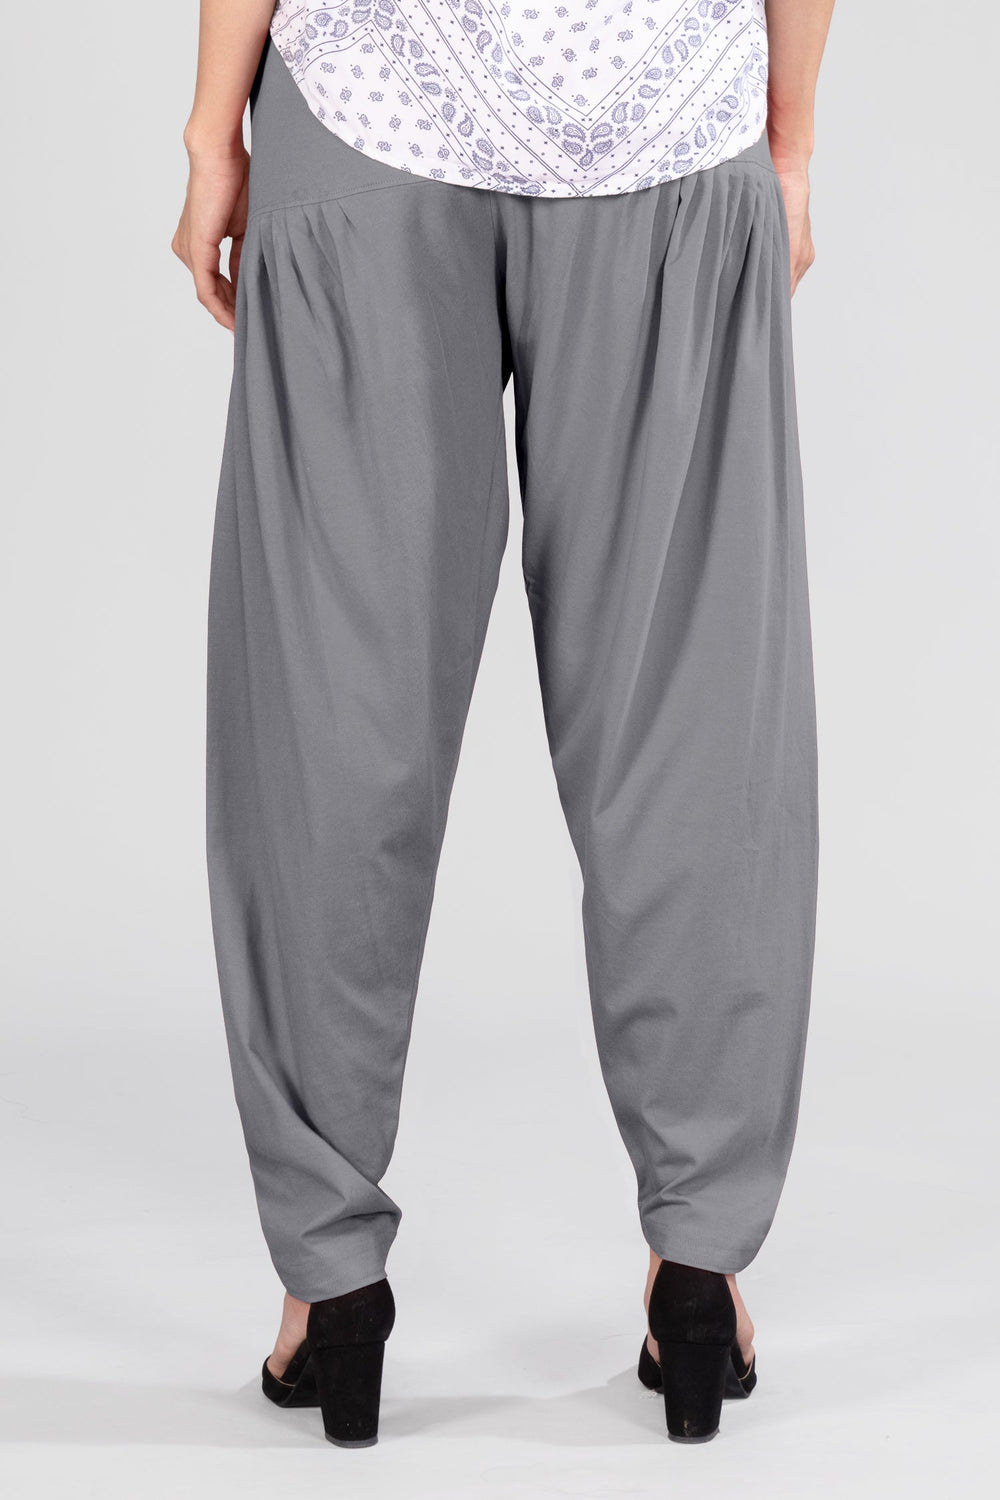 Grey Cotton Patiala Pants